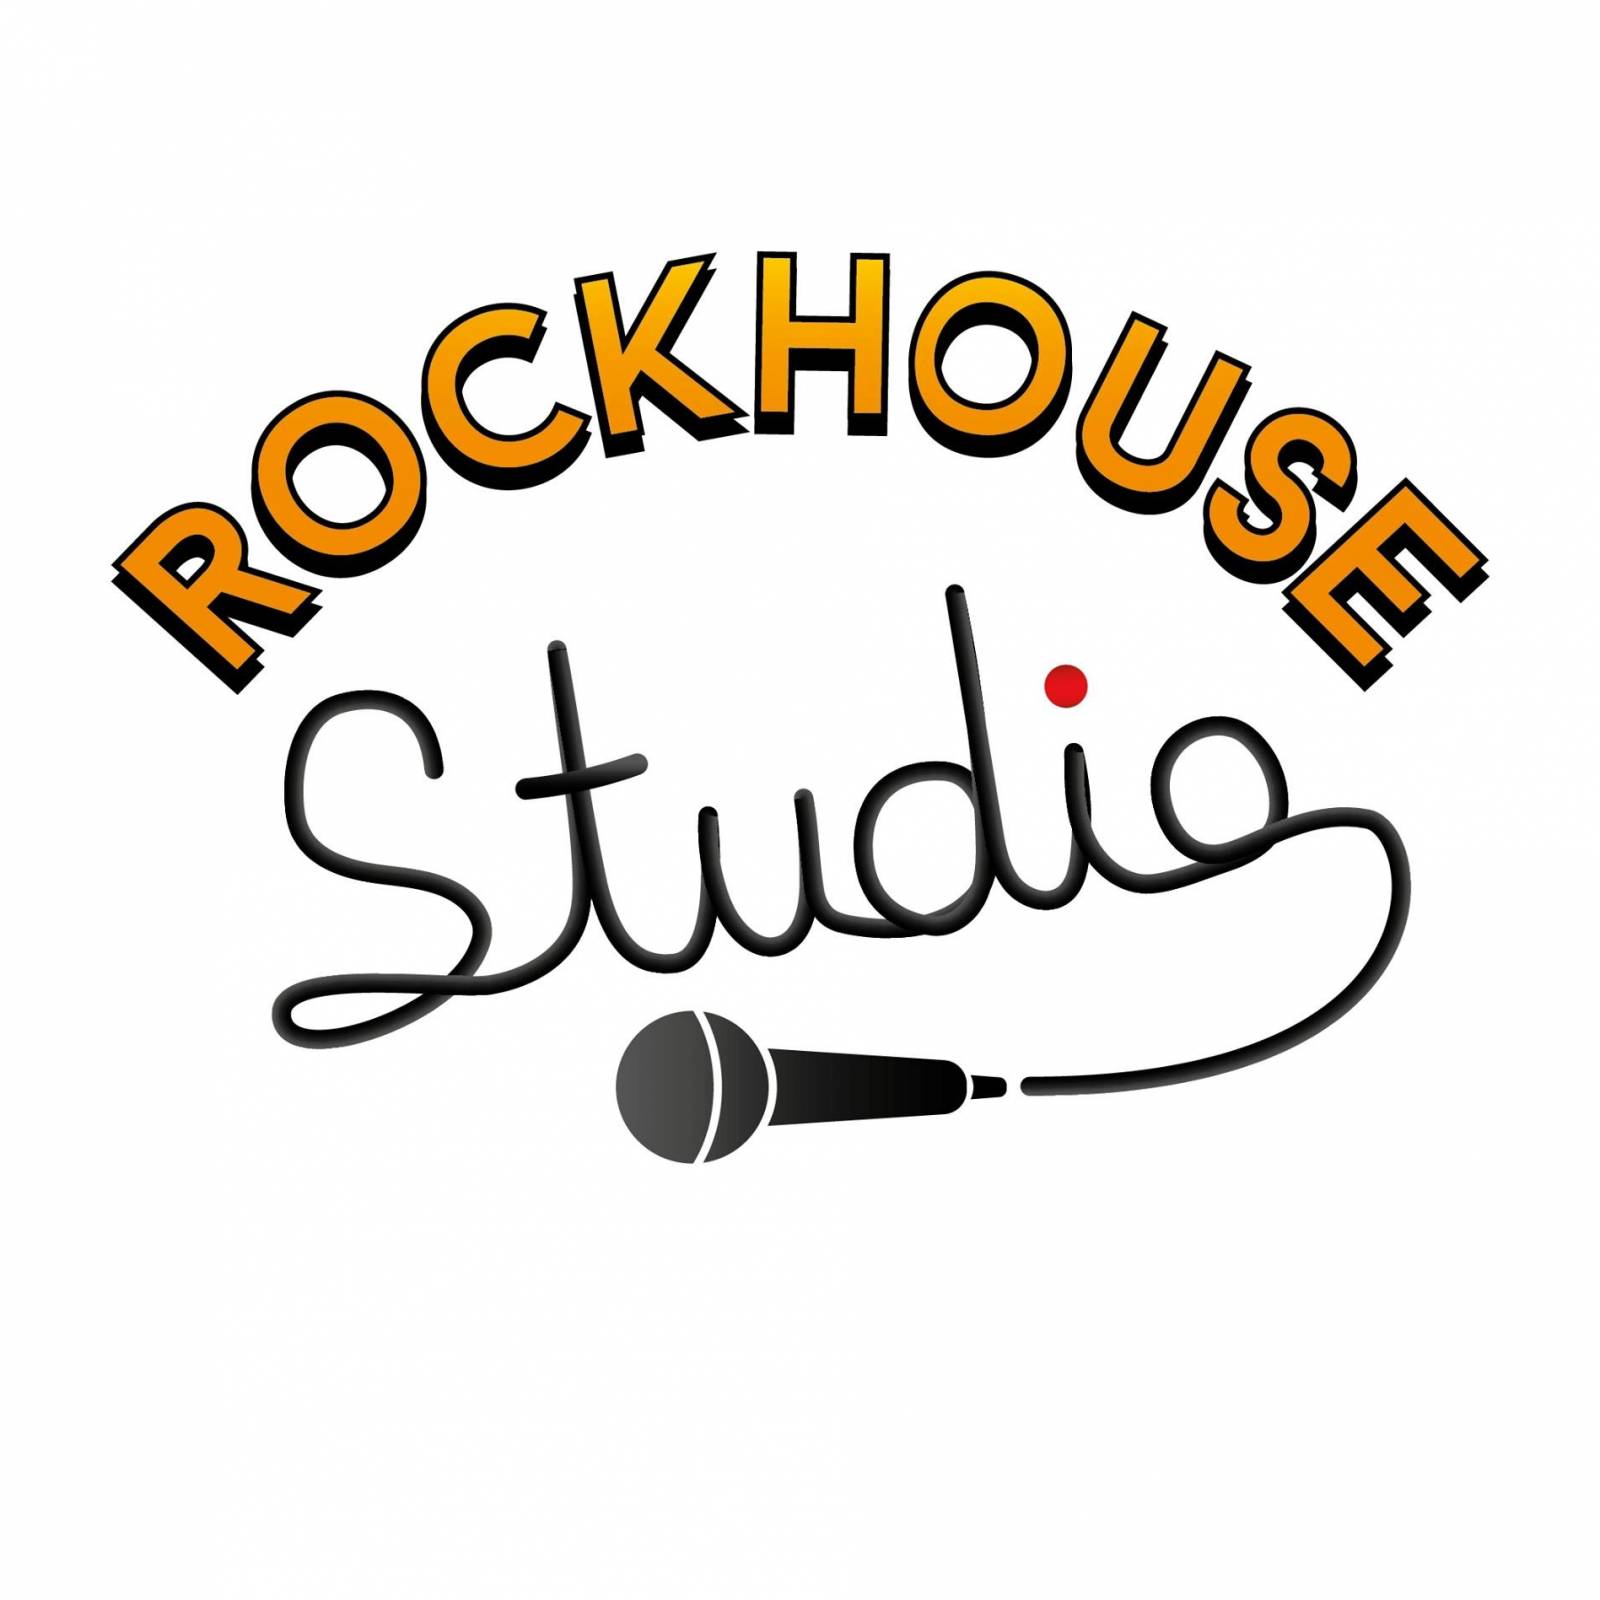 Rockhouse Studio